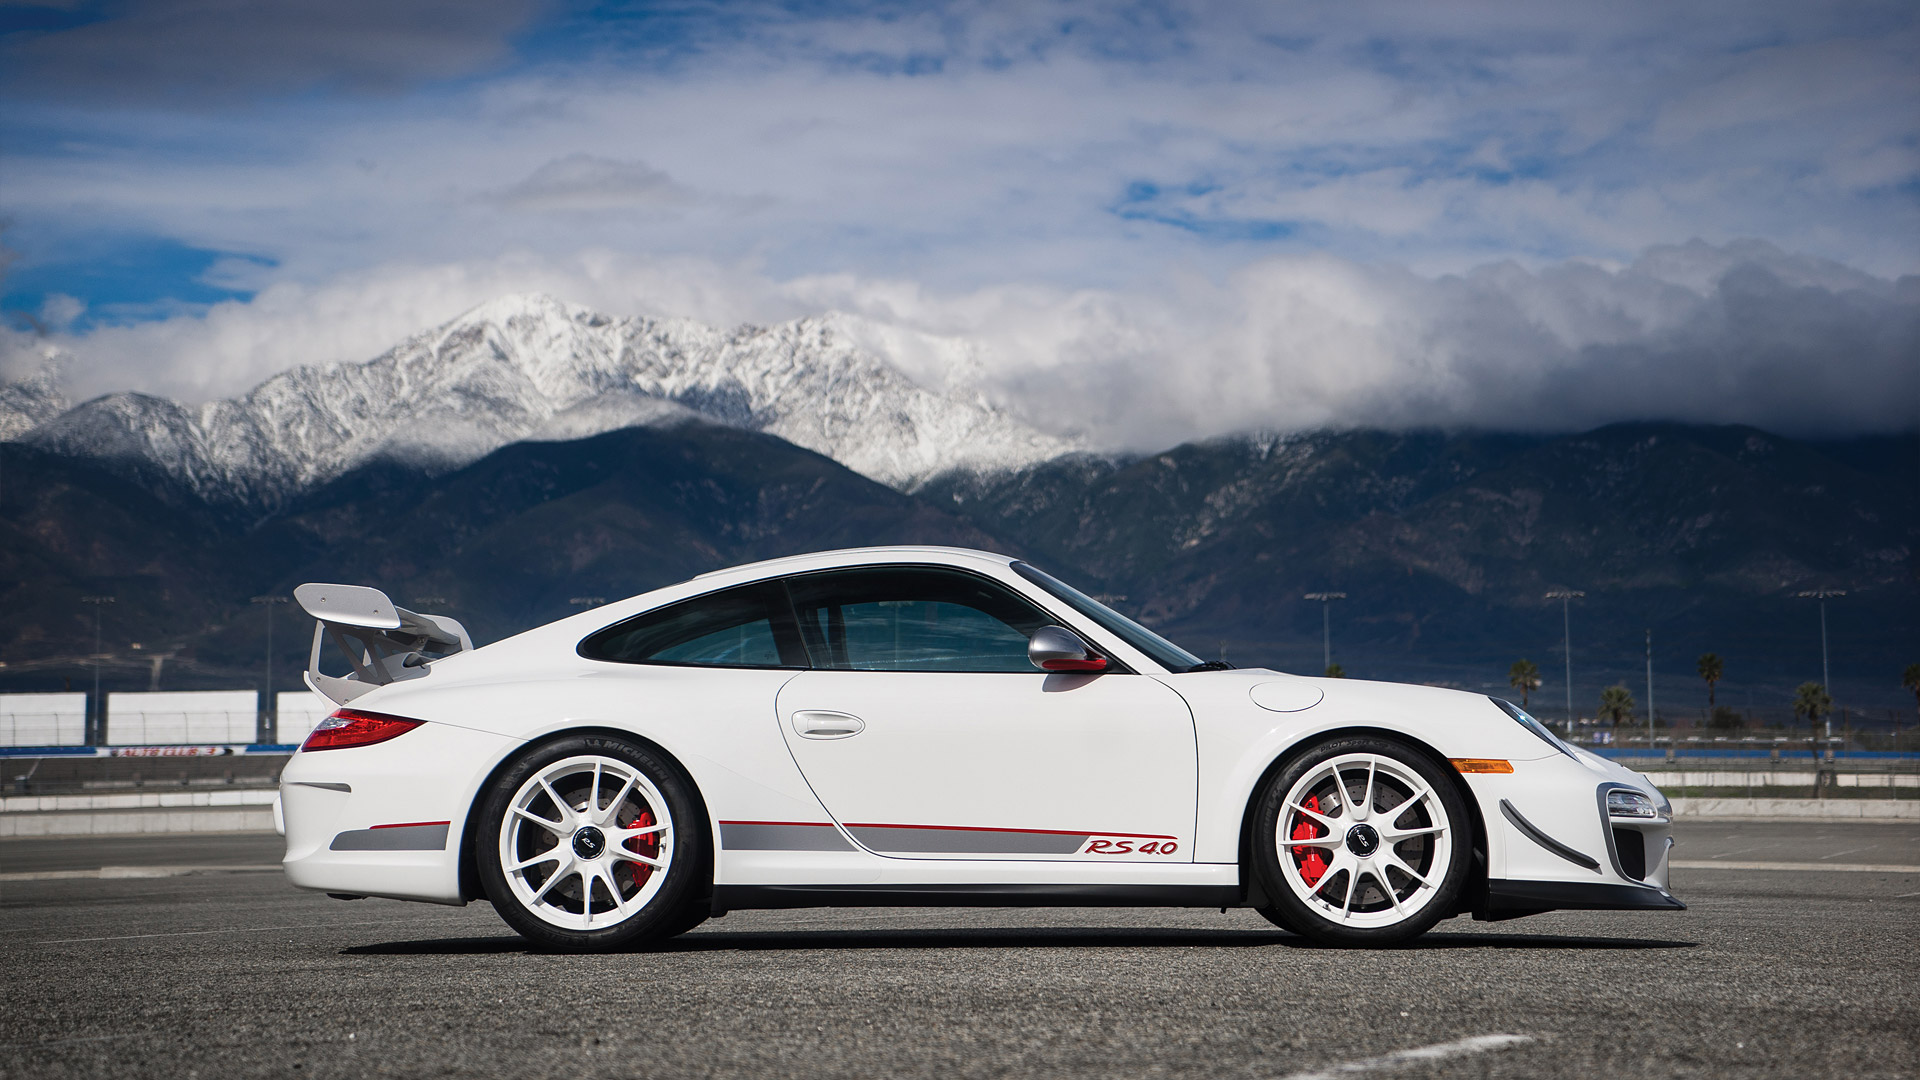  2011 Porsche 911 GT3 RS 4.0 Wallpaper.